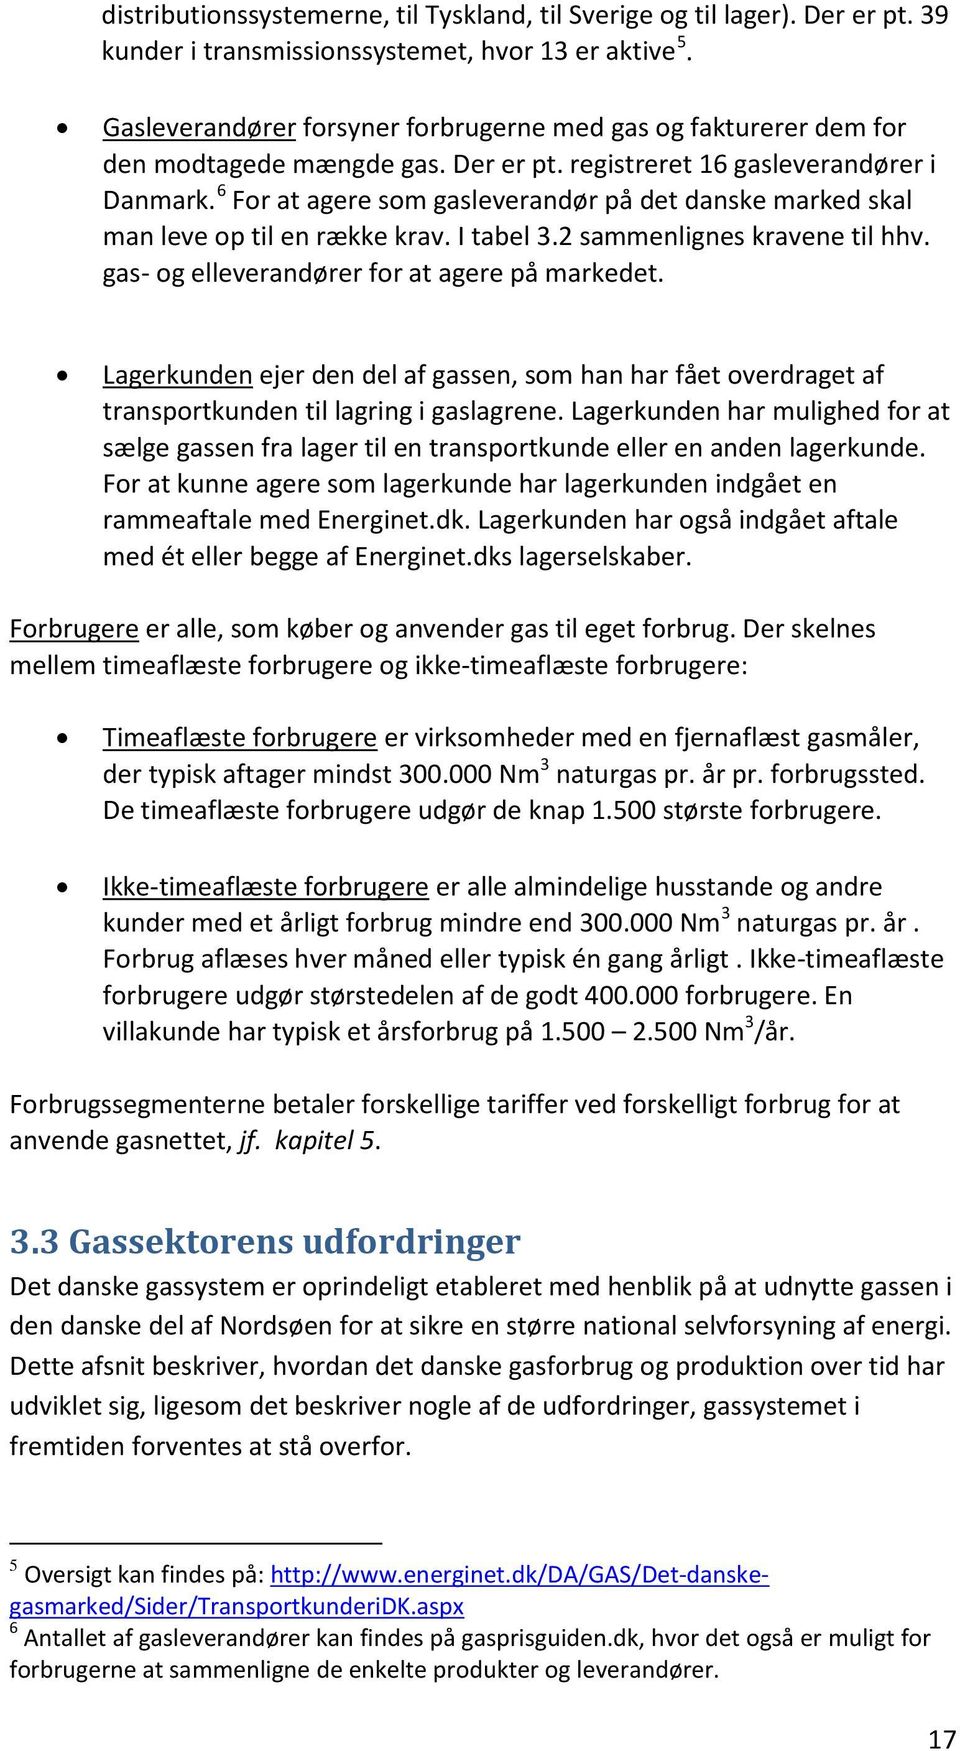 6 For at agere som gasleverandør på det danske marked skal man leve op til en række krav. I tabel 3.2 sammenlignes kravene til hhv. gas- og elleverandører for at agere på markedet.